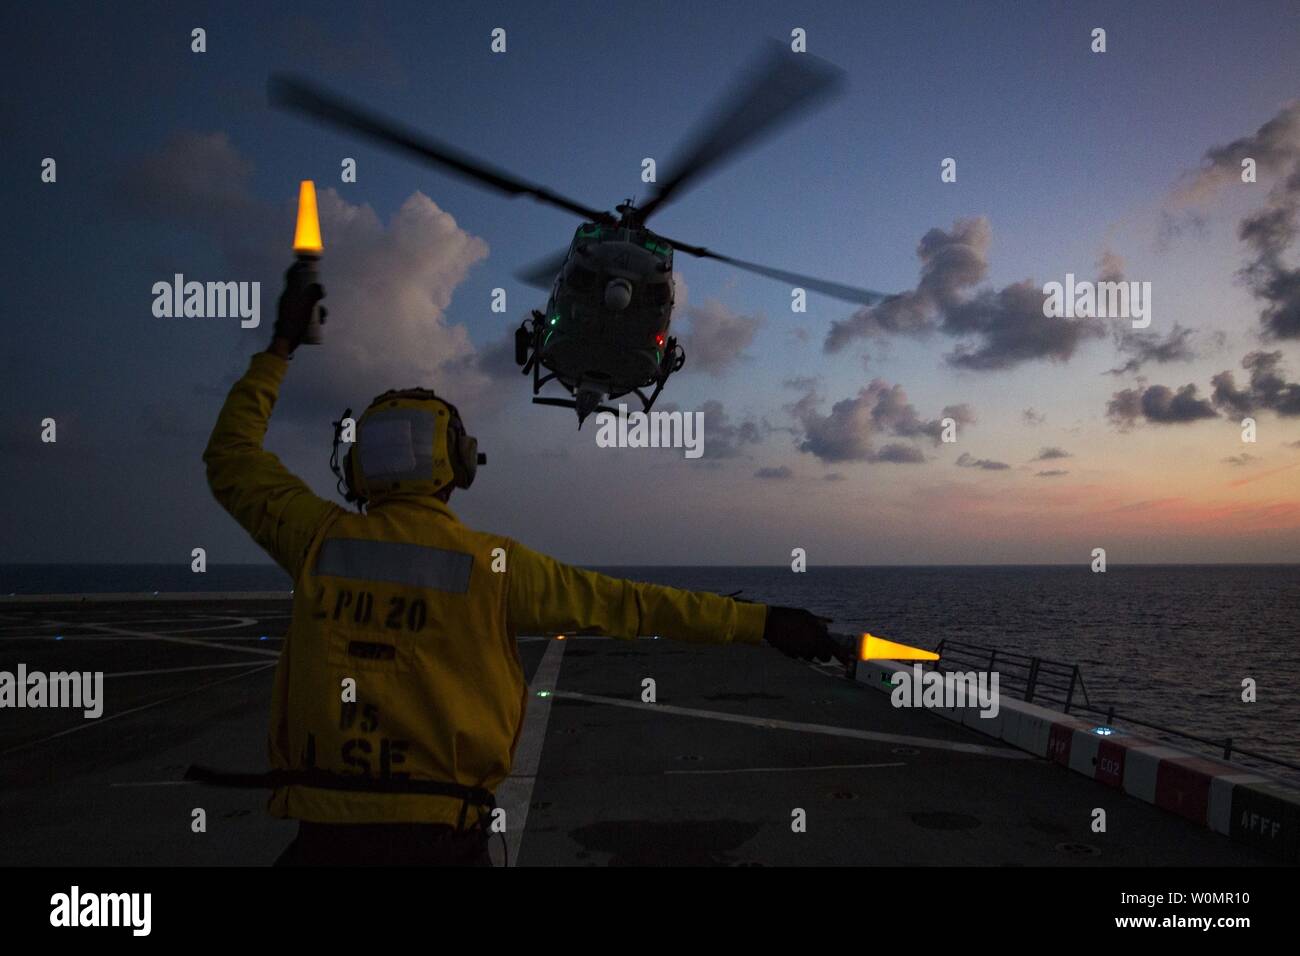 Petty Officer 2nd class Torien Collins, einer Luftfahrt boatswainÕs mate, leitet ein Marine Corps UH-1Y Venom 'Huey' Helikopter von Marine Medium Tiltrotor Squadron 262 (verstärkt), 31 Marine Expeditionary Unit, zum take-off von Flight Deck der USS Green Bay (LPD-20), am Meer, am 23. August 2016. Foto von Darien J. Bjorndal/U.S. Marine Corps/UPI Stockfoto